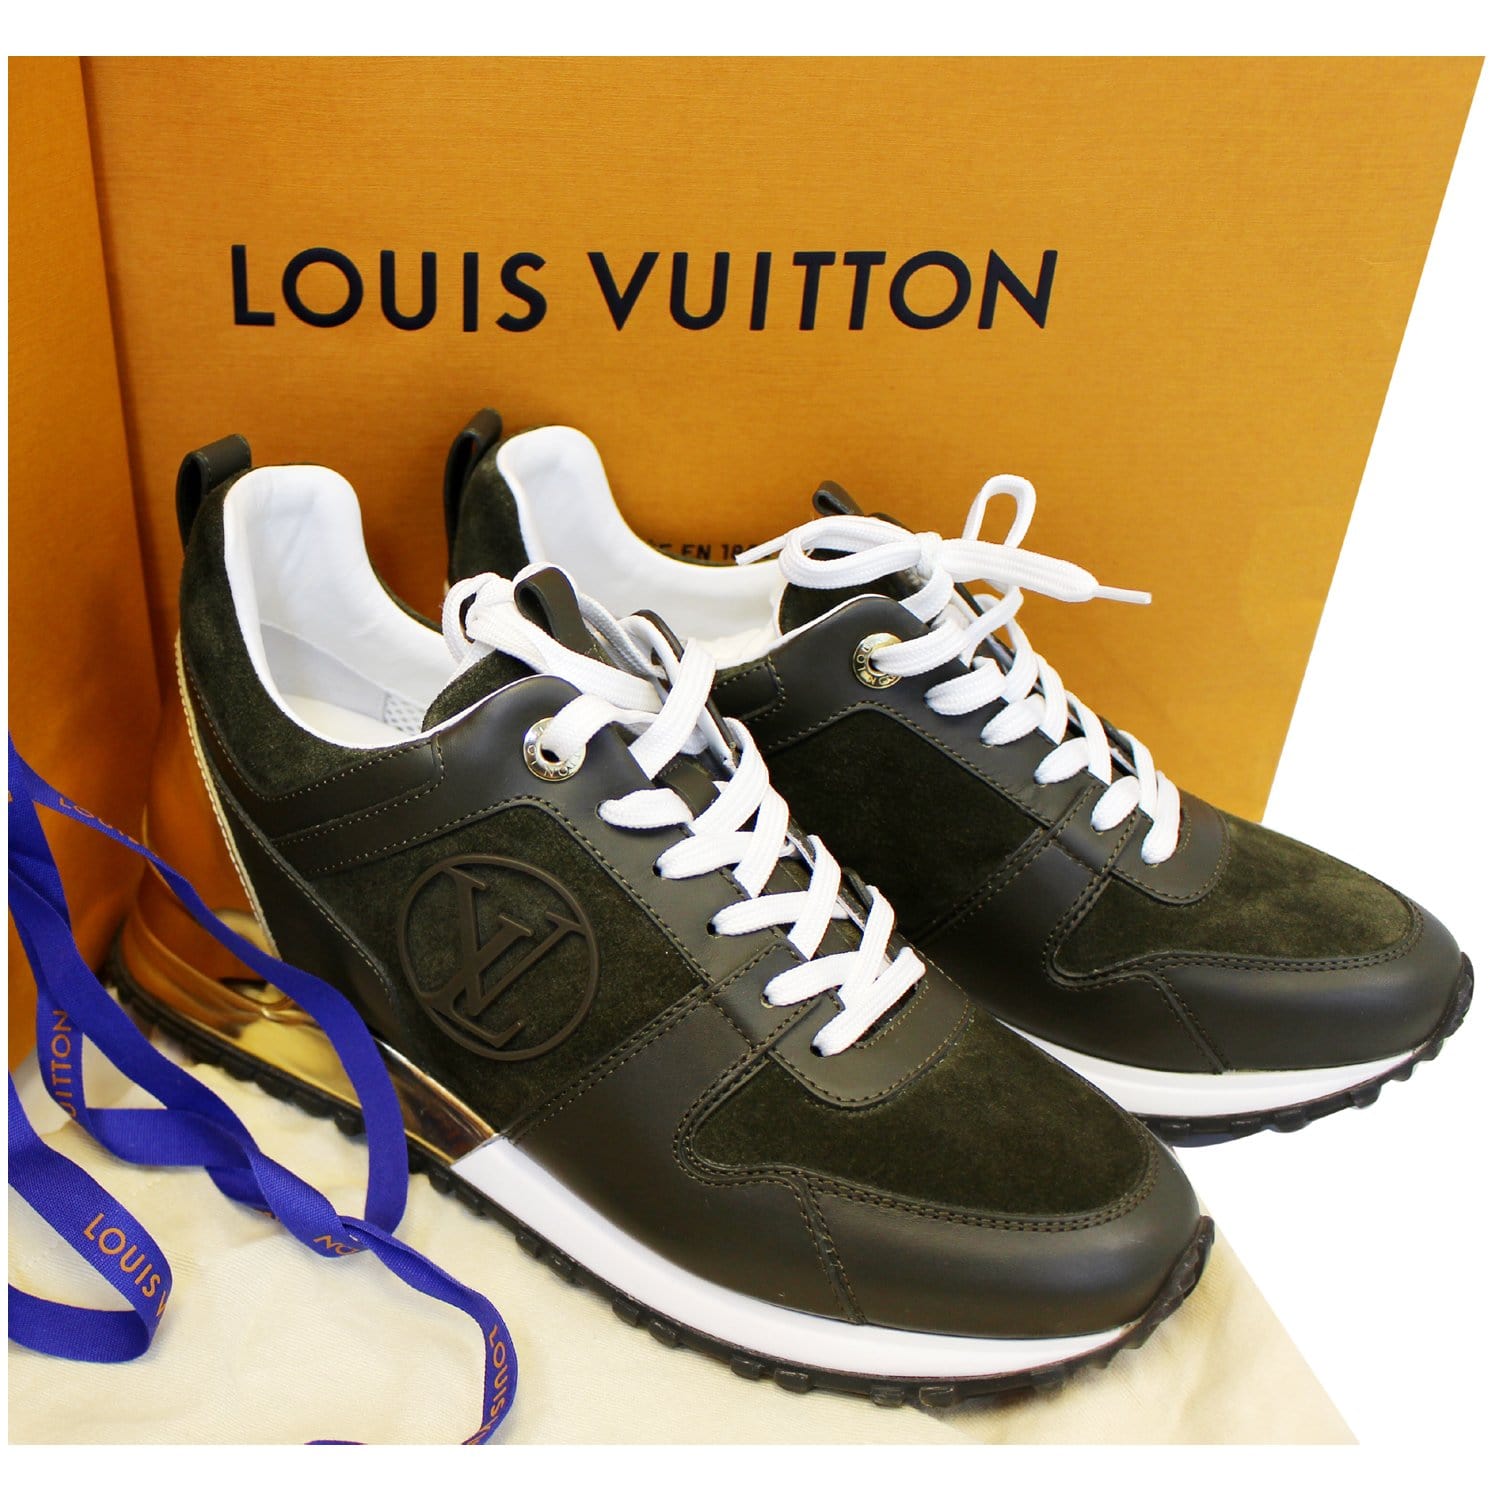 Louis Vuitton Shoes size 37  Louis vuitton shoes, Shoes, Louis vuitton